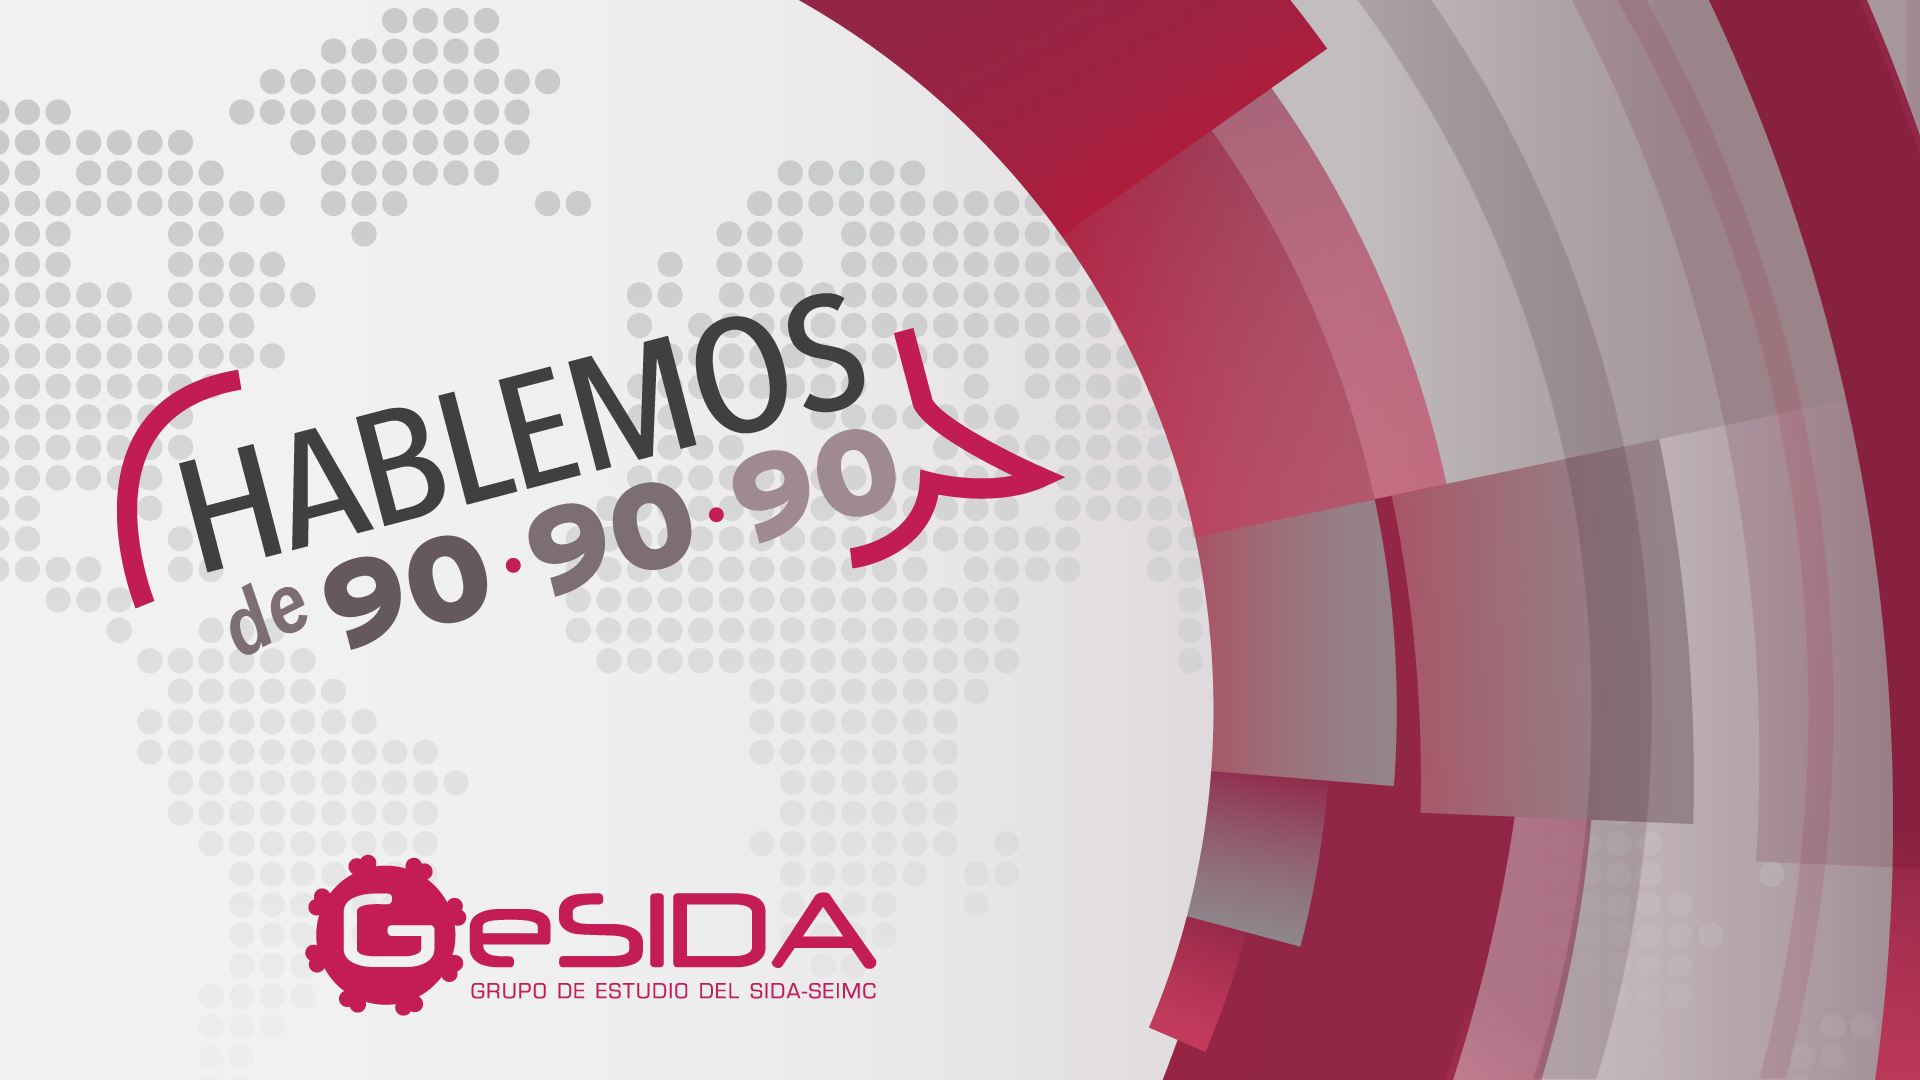 GeSIDA pone en marcha una campaña de vídeos para explicar la realidad del VIH en España y promover una mejor prevención y detección precoz del virus, principales retos de la lucha contra el SIDA